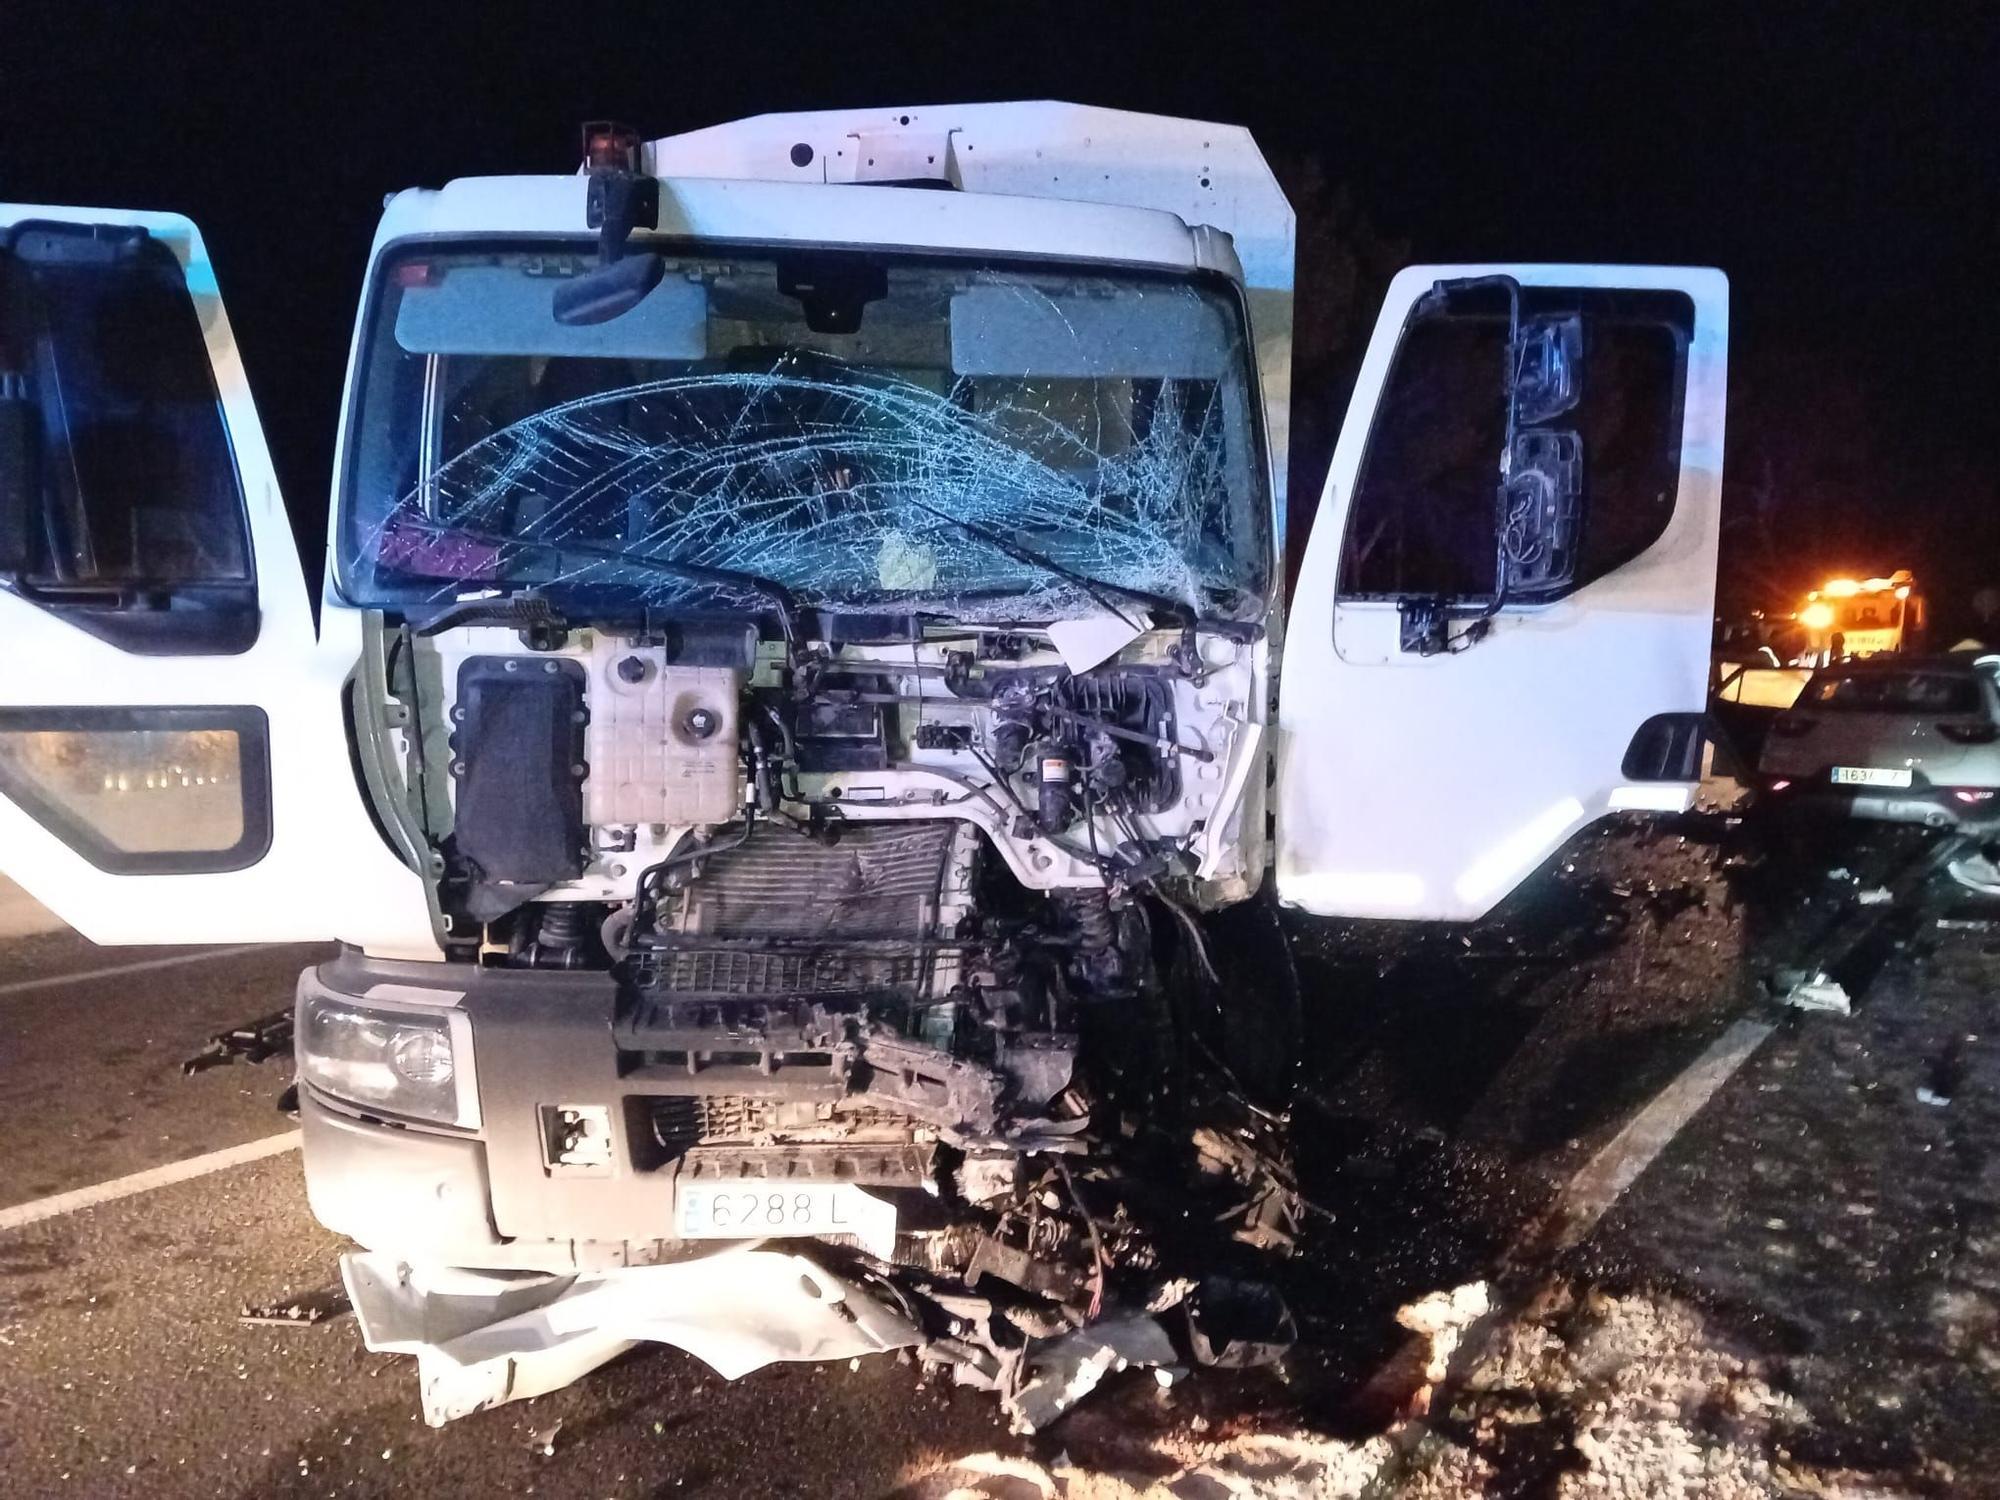 Galería: Accidente mortal en la carretera de Santa Eulària